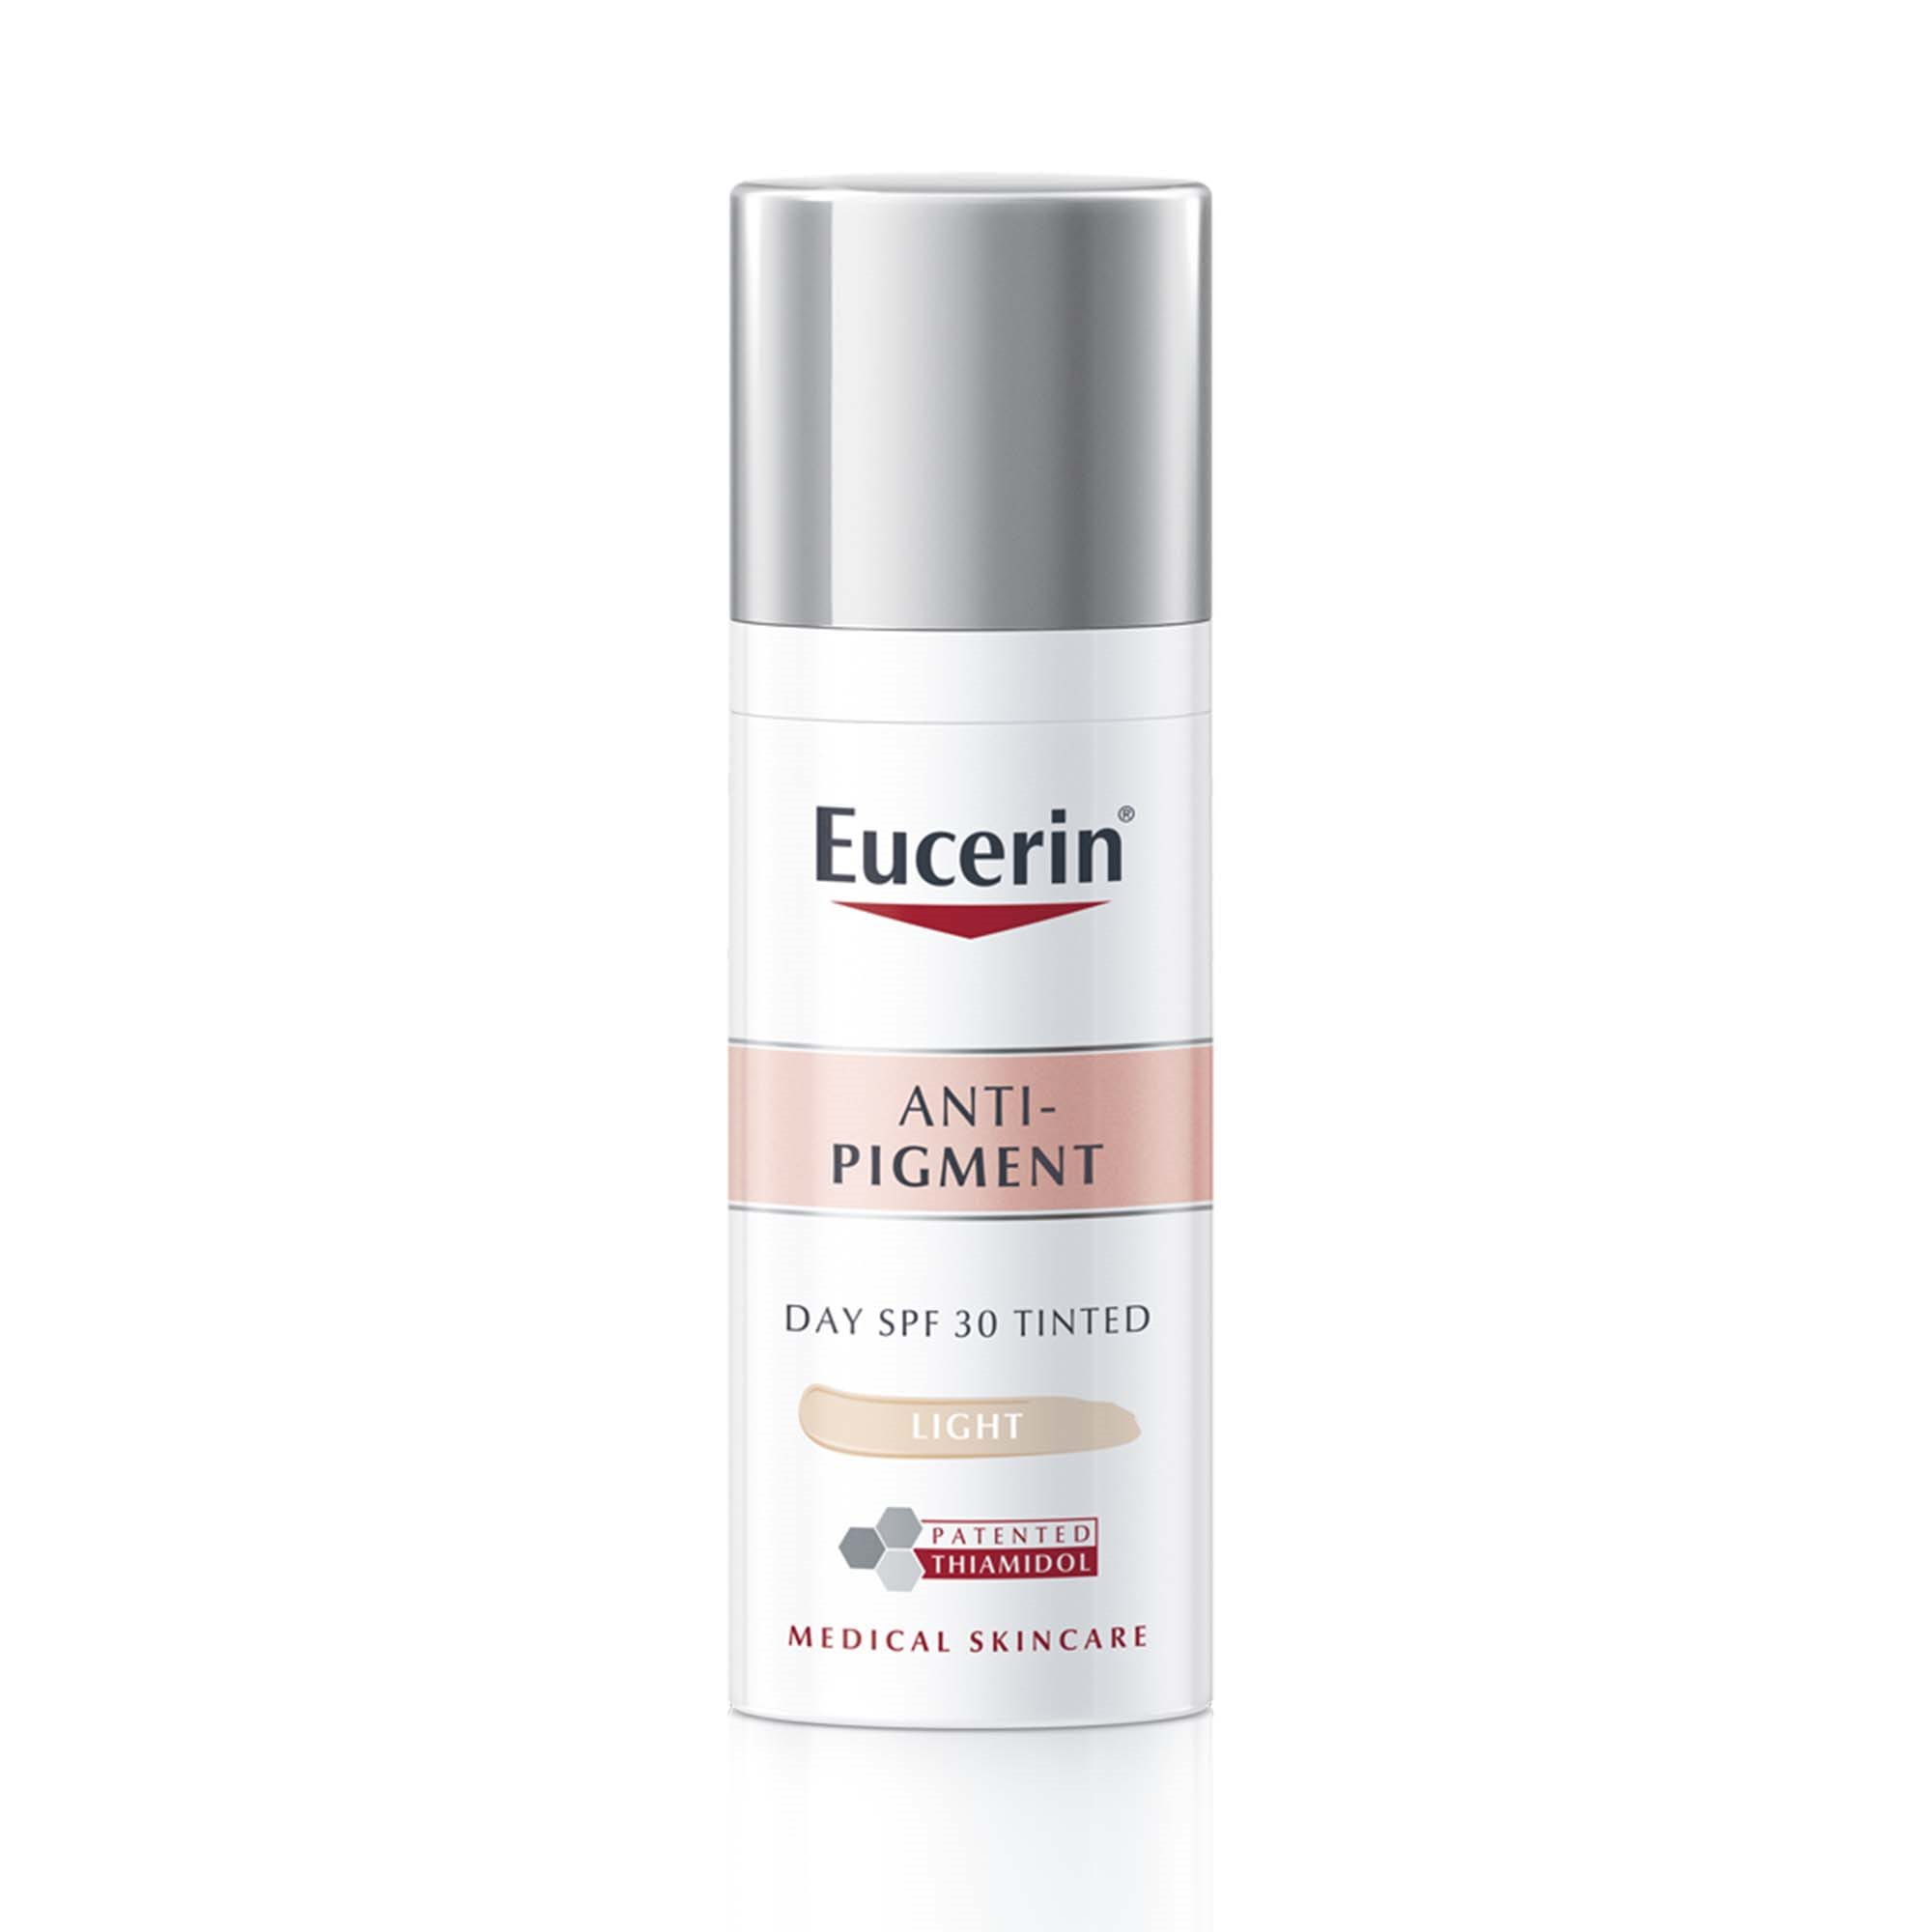 Eucerin Anti-Pigment dieninis šviesaus atspalvio kremas SPF 30 akimirksniu užmaskuoja ir sumažina pigmentines dėmes